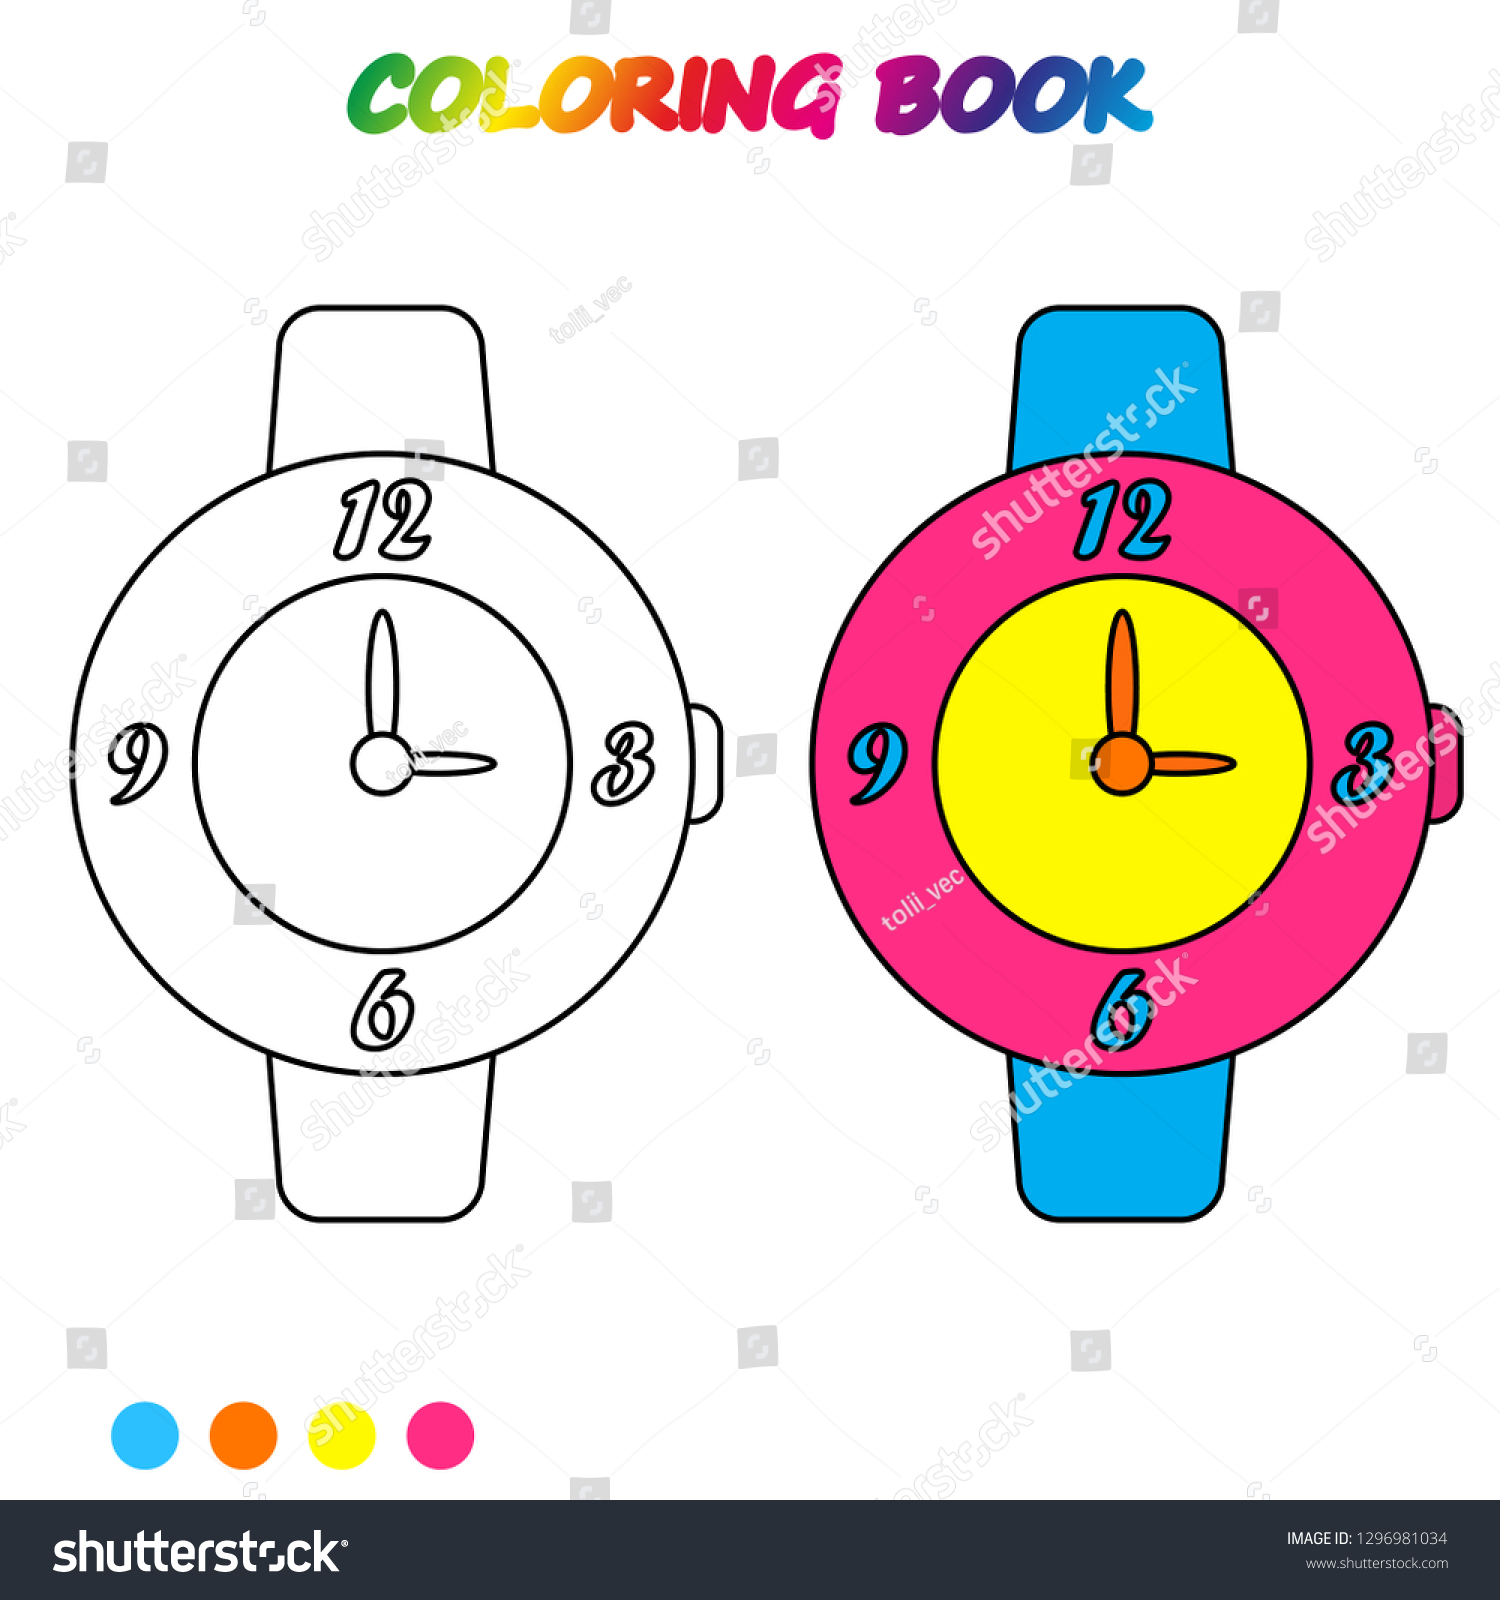 preschool watch